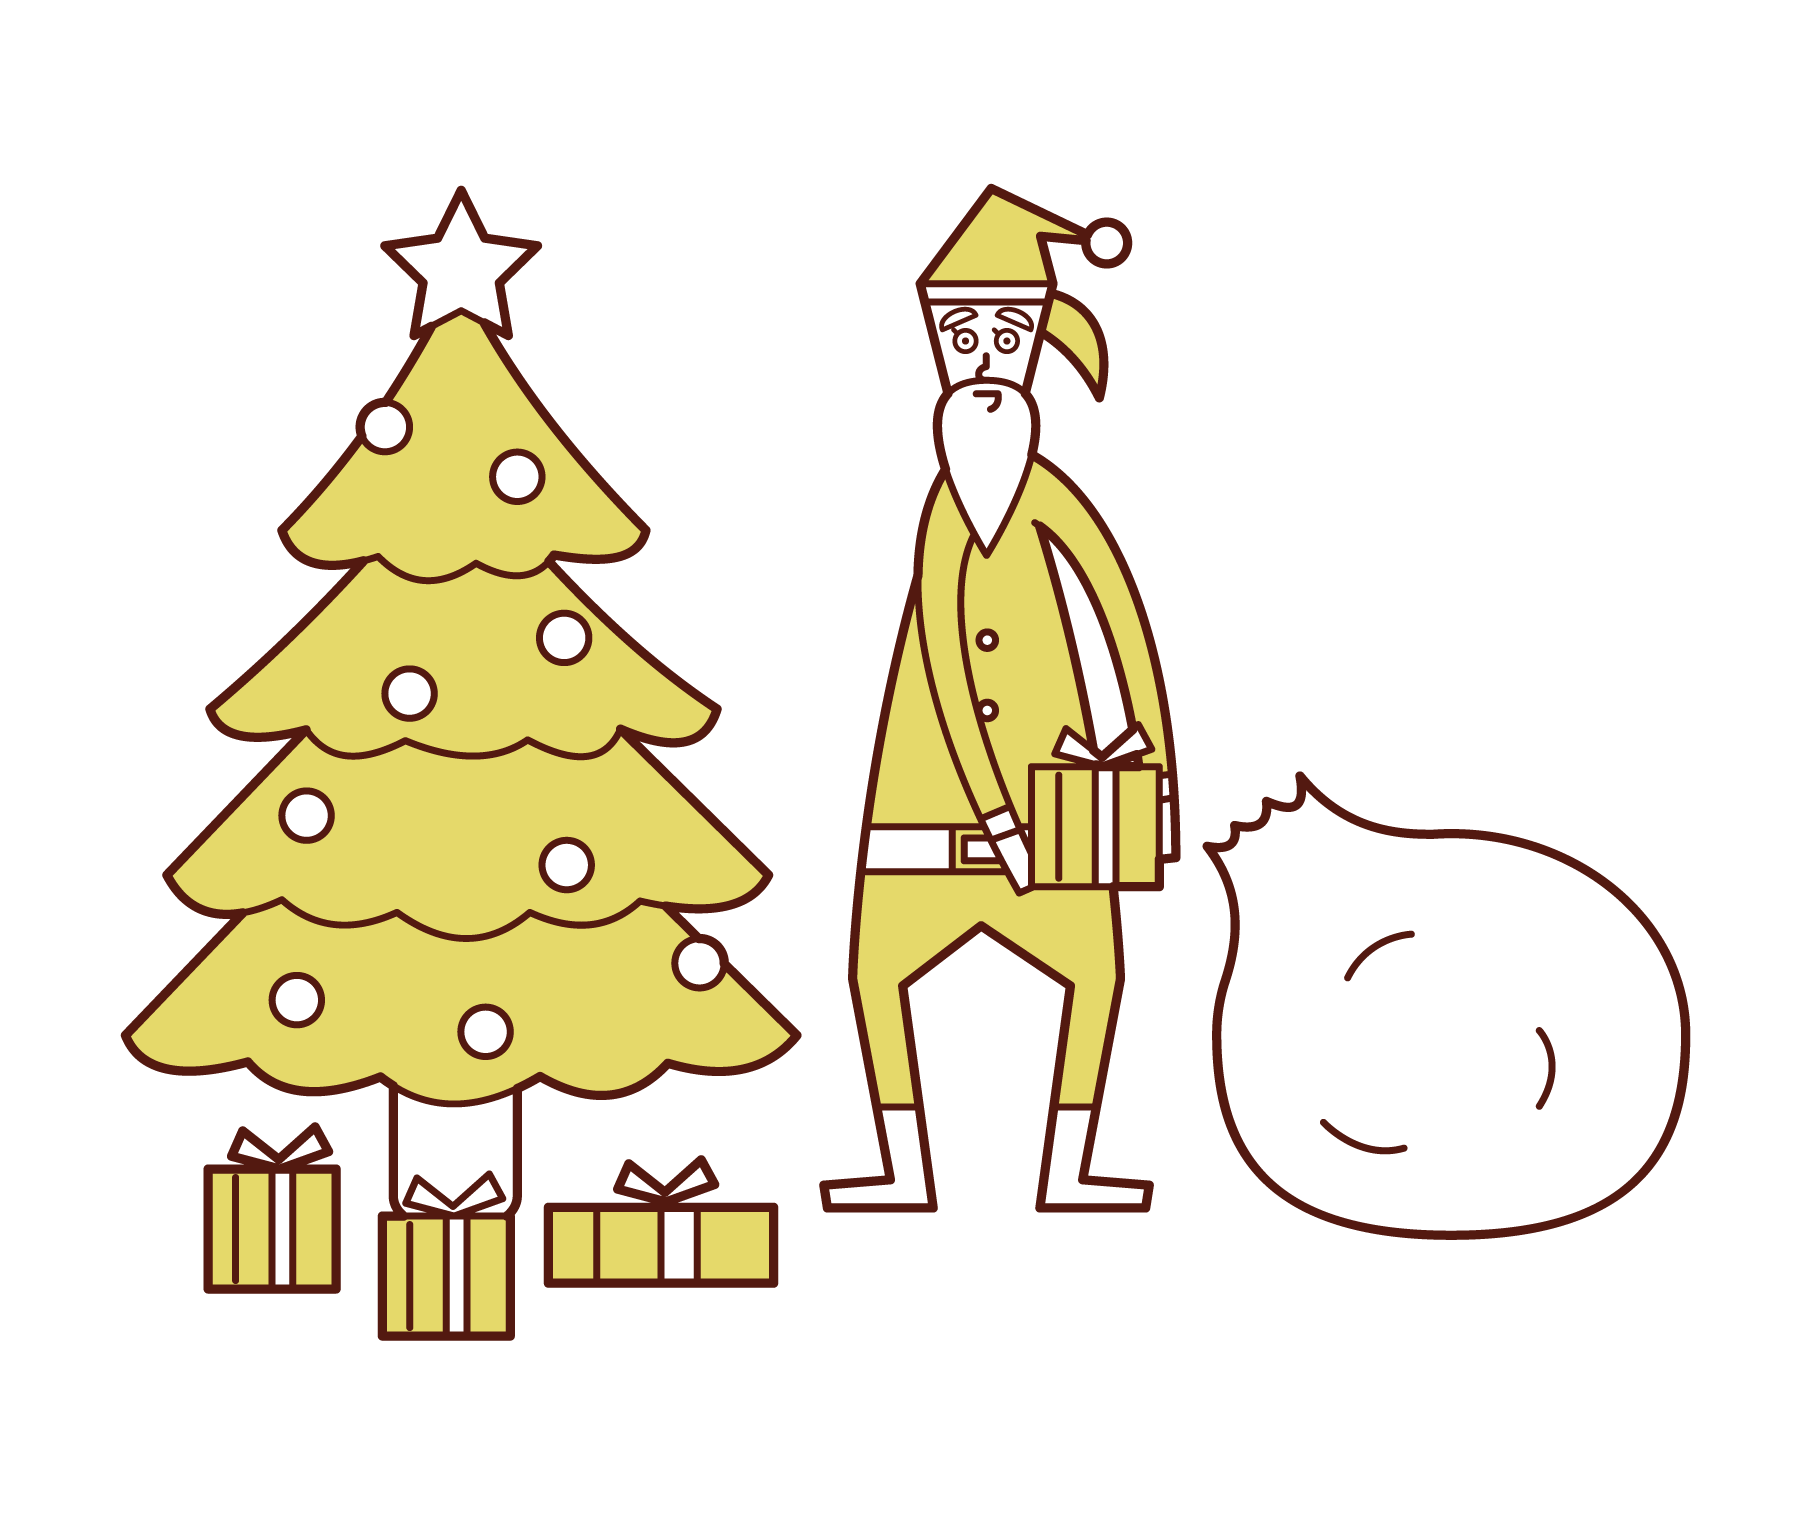 聖誕老人 女性 在聖誕樹下排列禮物的插圖 免費插圖素材kukukeke